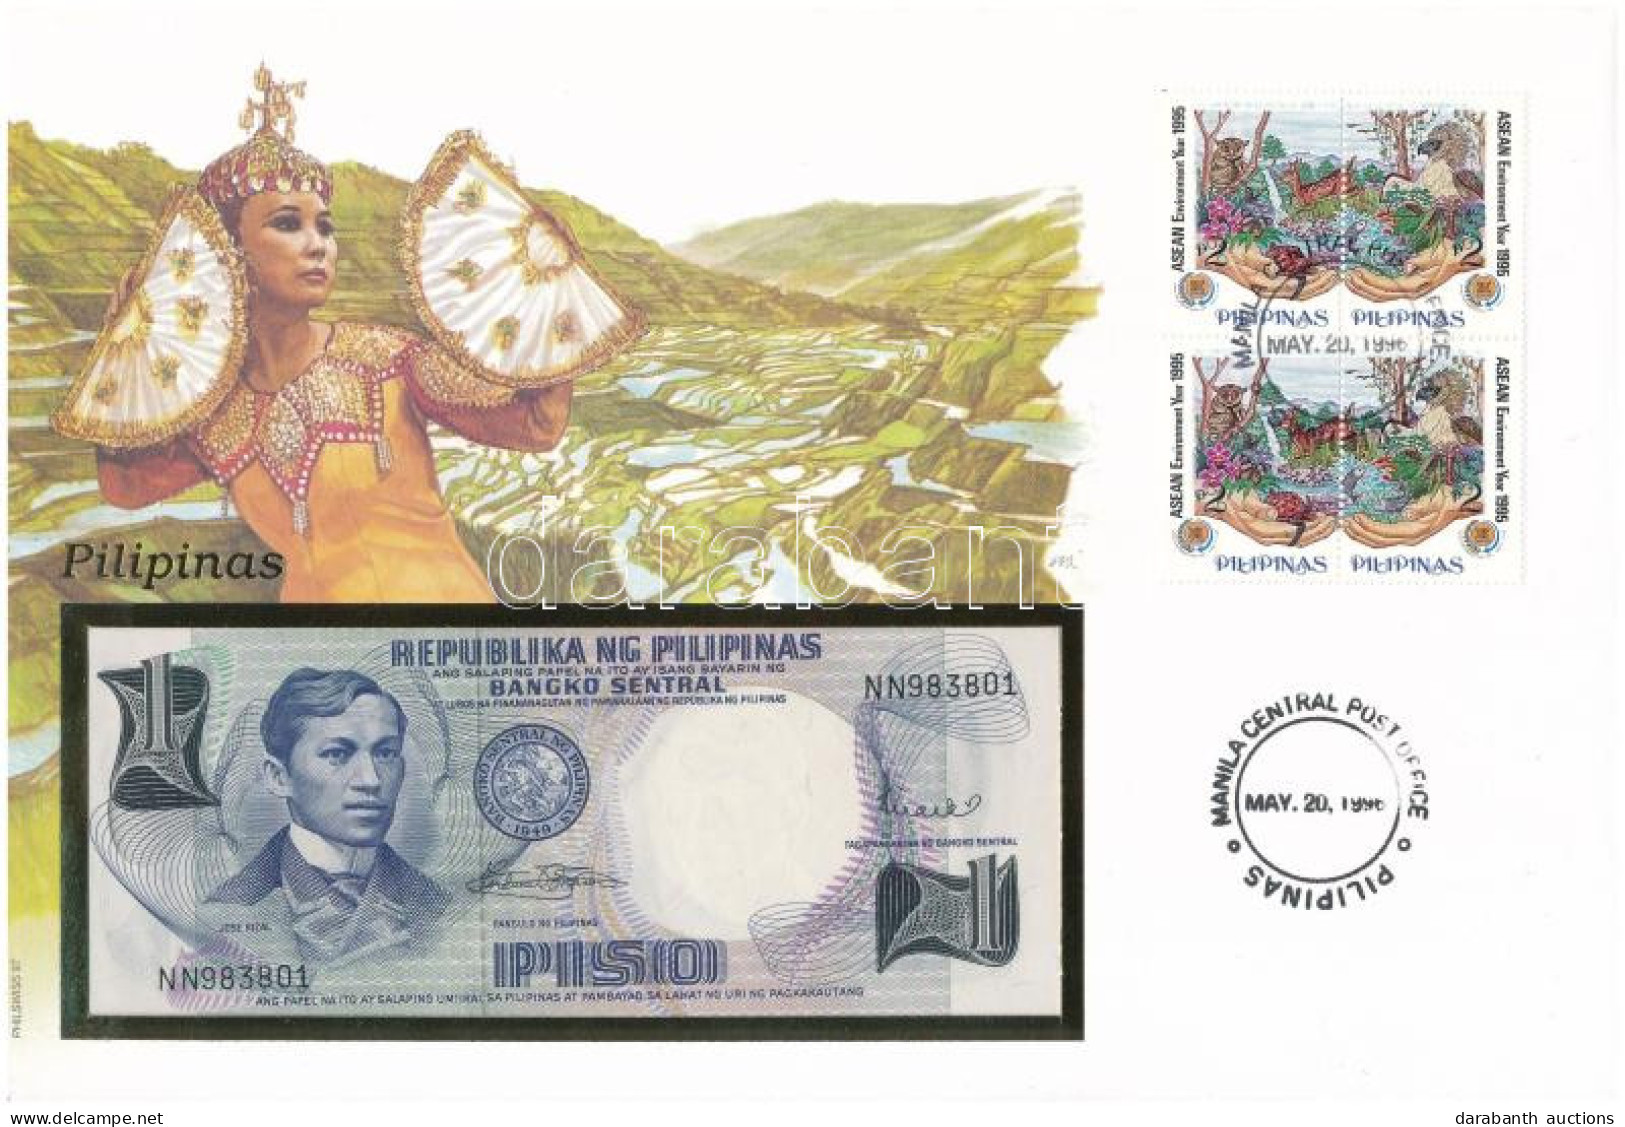 Fülöp-szigetek 1969. 1P Felbélyegzett Borítékban, Bélyegzéssel T:UNC Philippines 1969. 1 Piso In Envelope With Stamp And - Unclassified